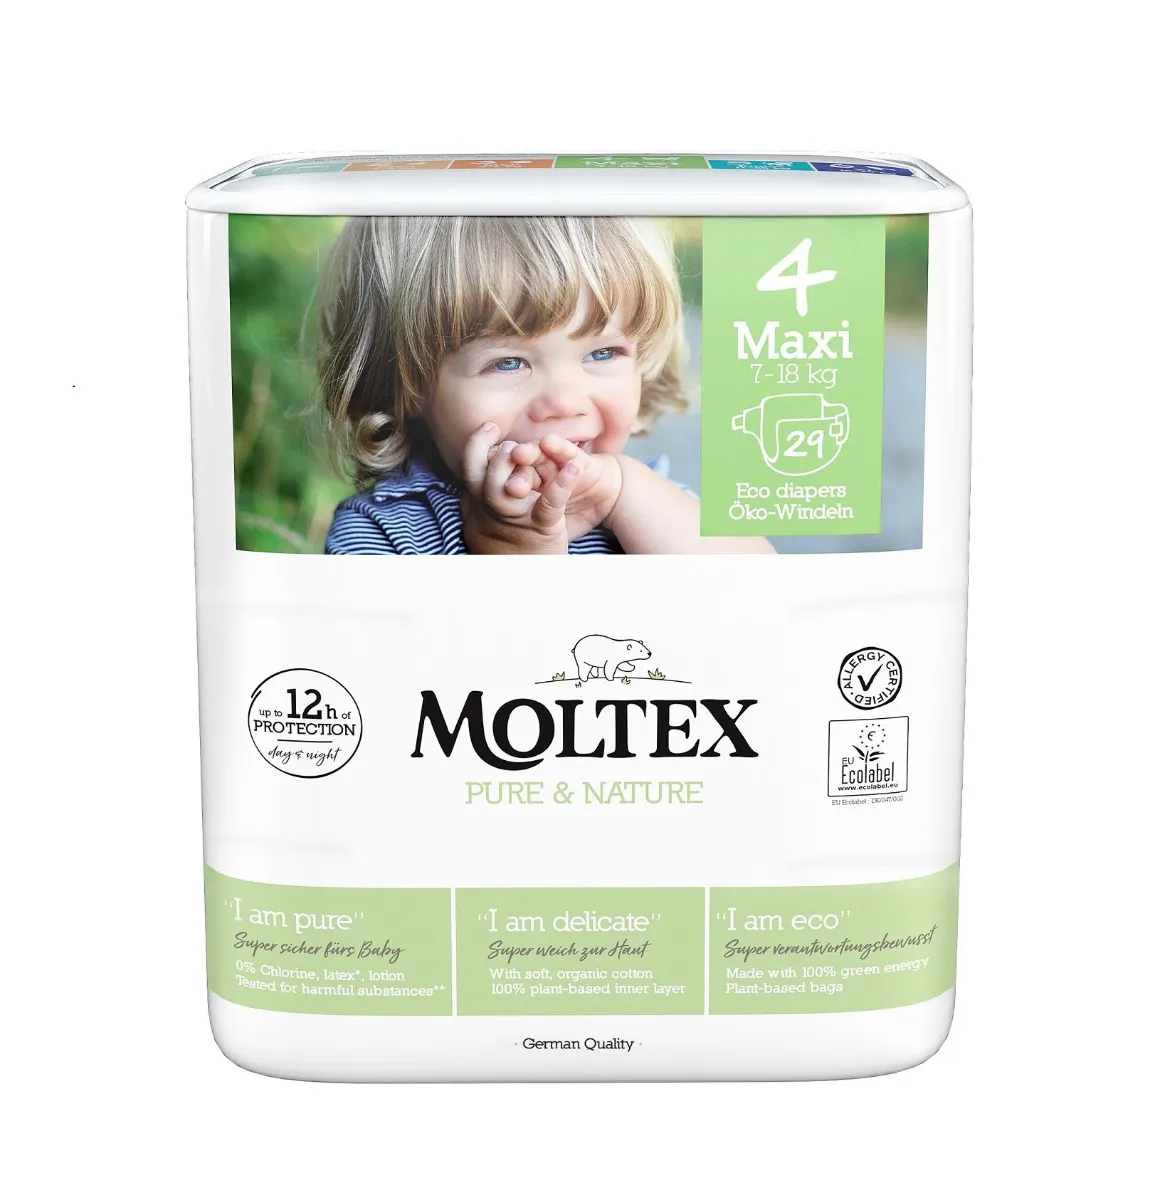 Moltex Pure & Nature Maxi 7-18 kg